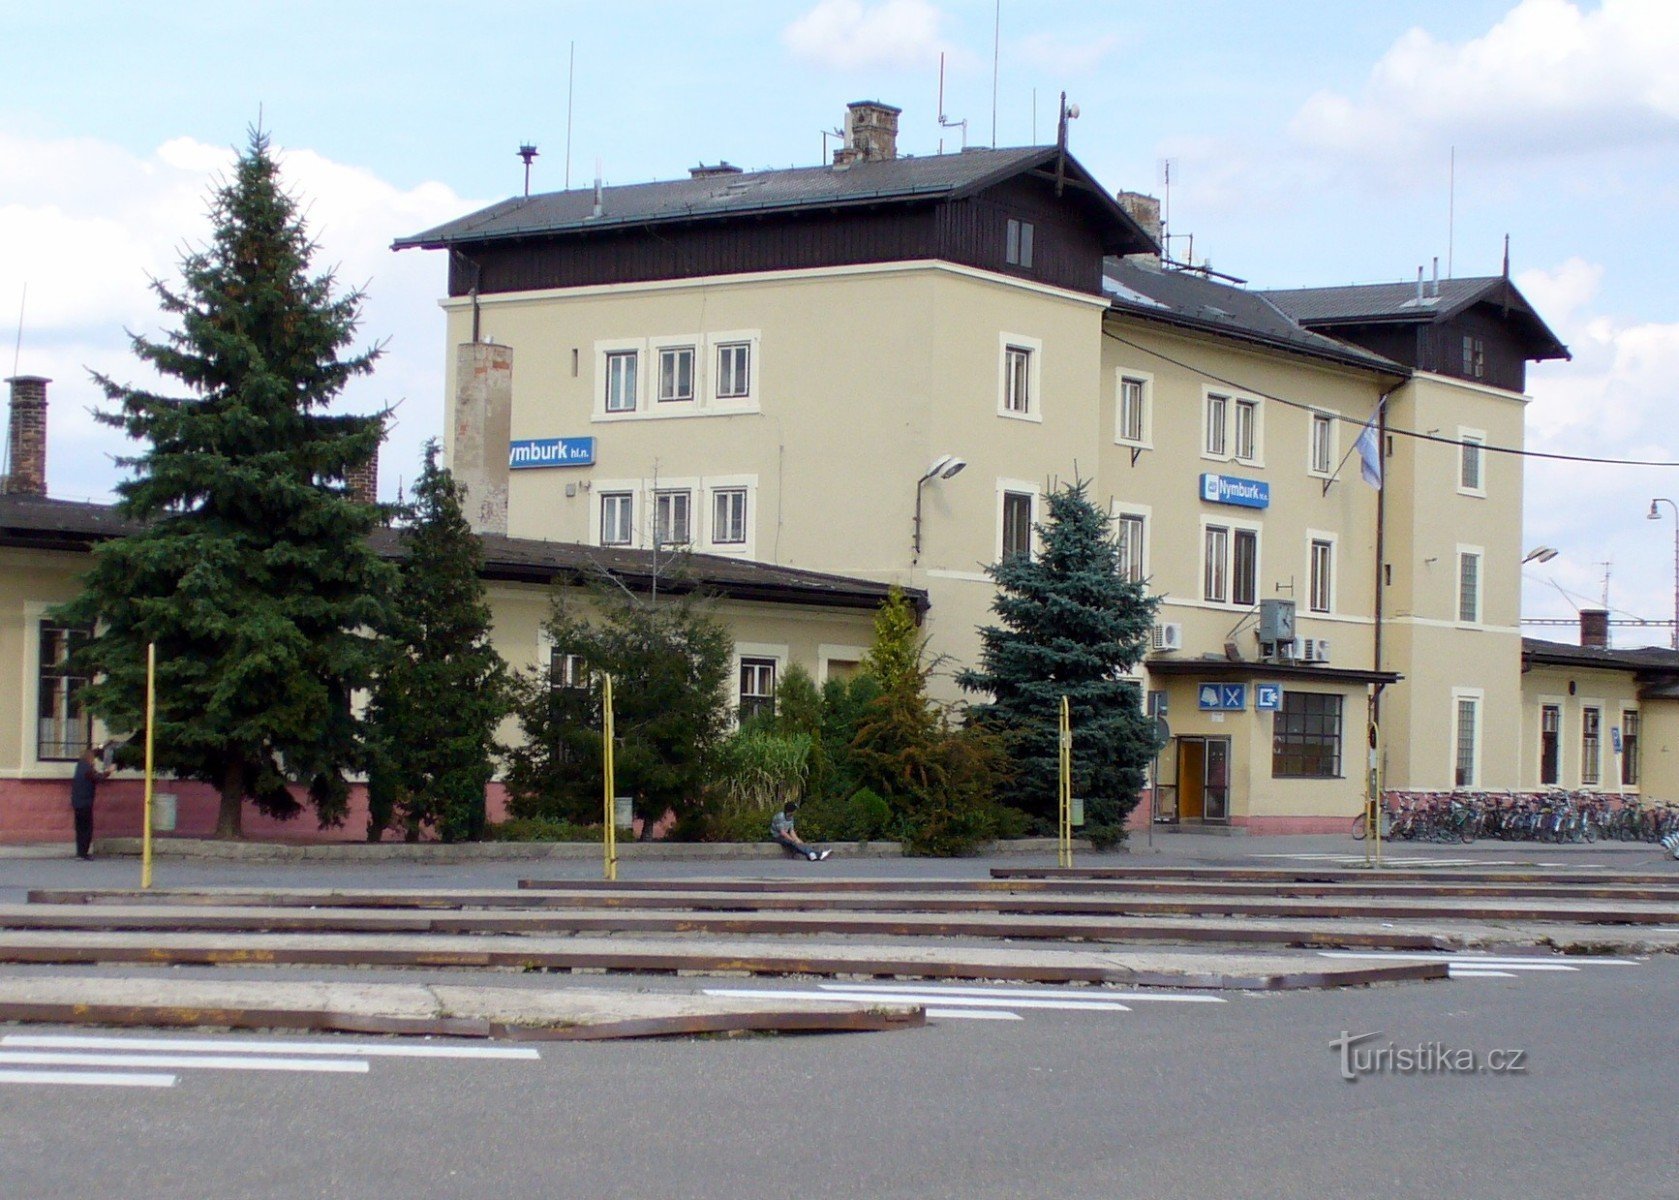 Estación central ČD (desde 1870)